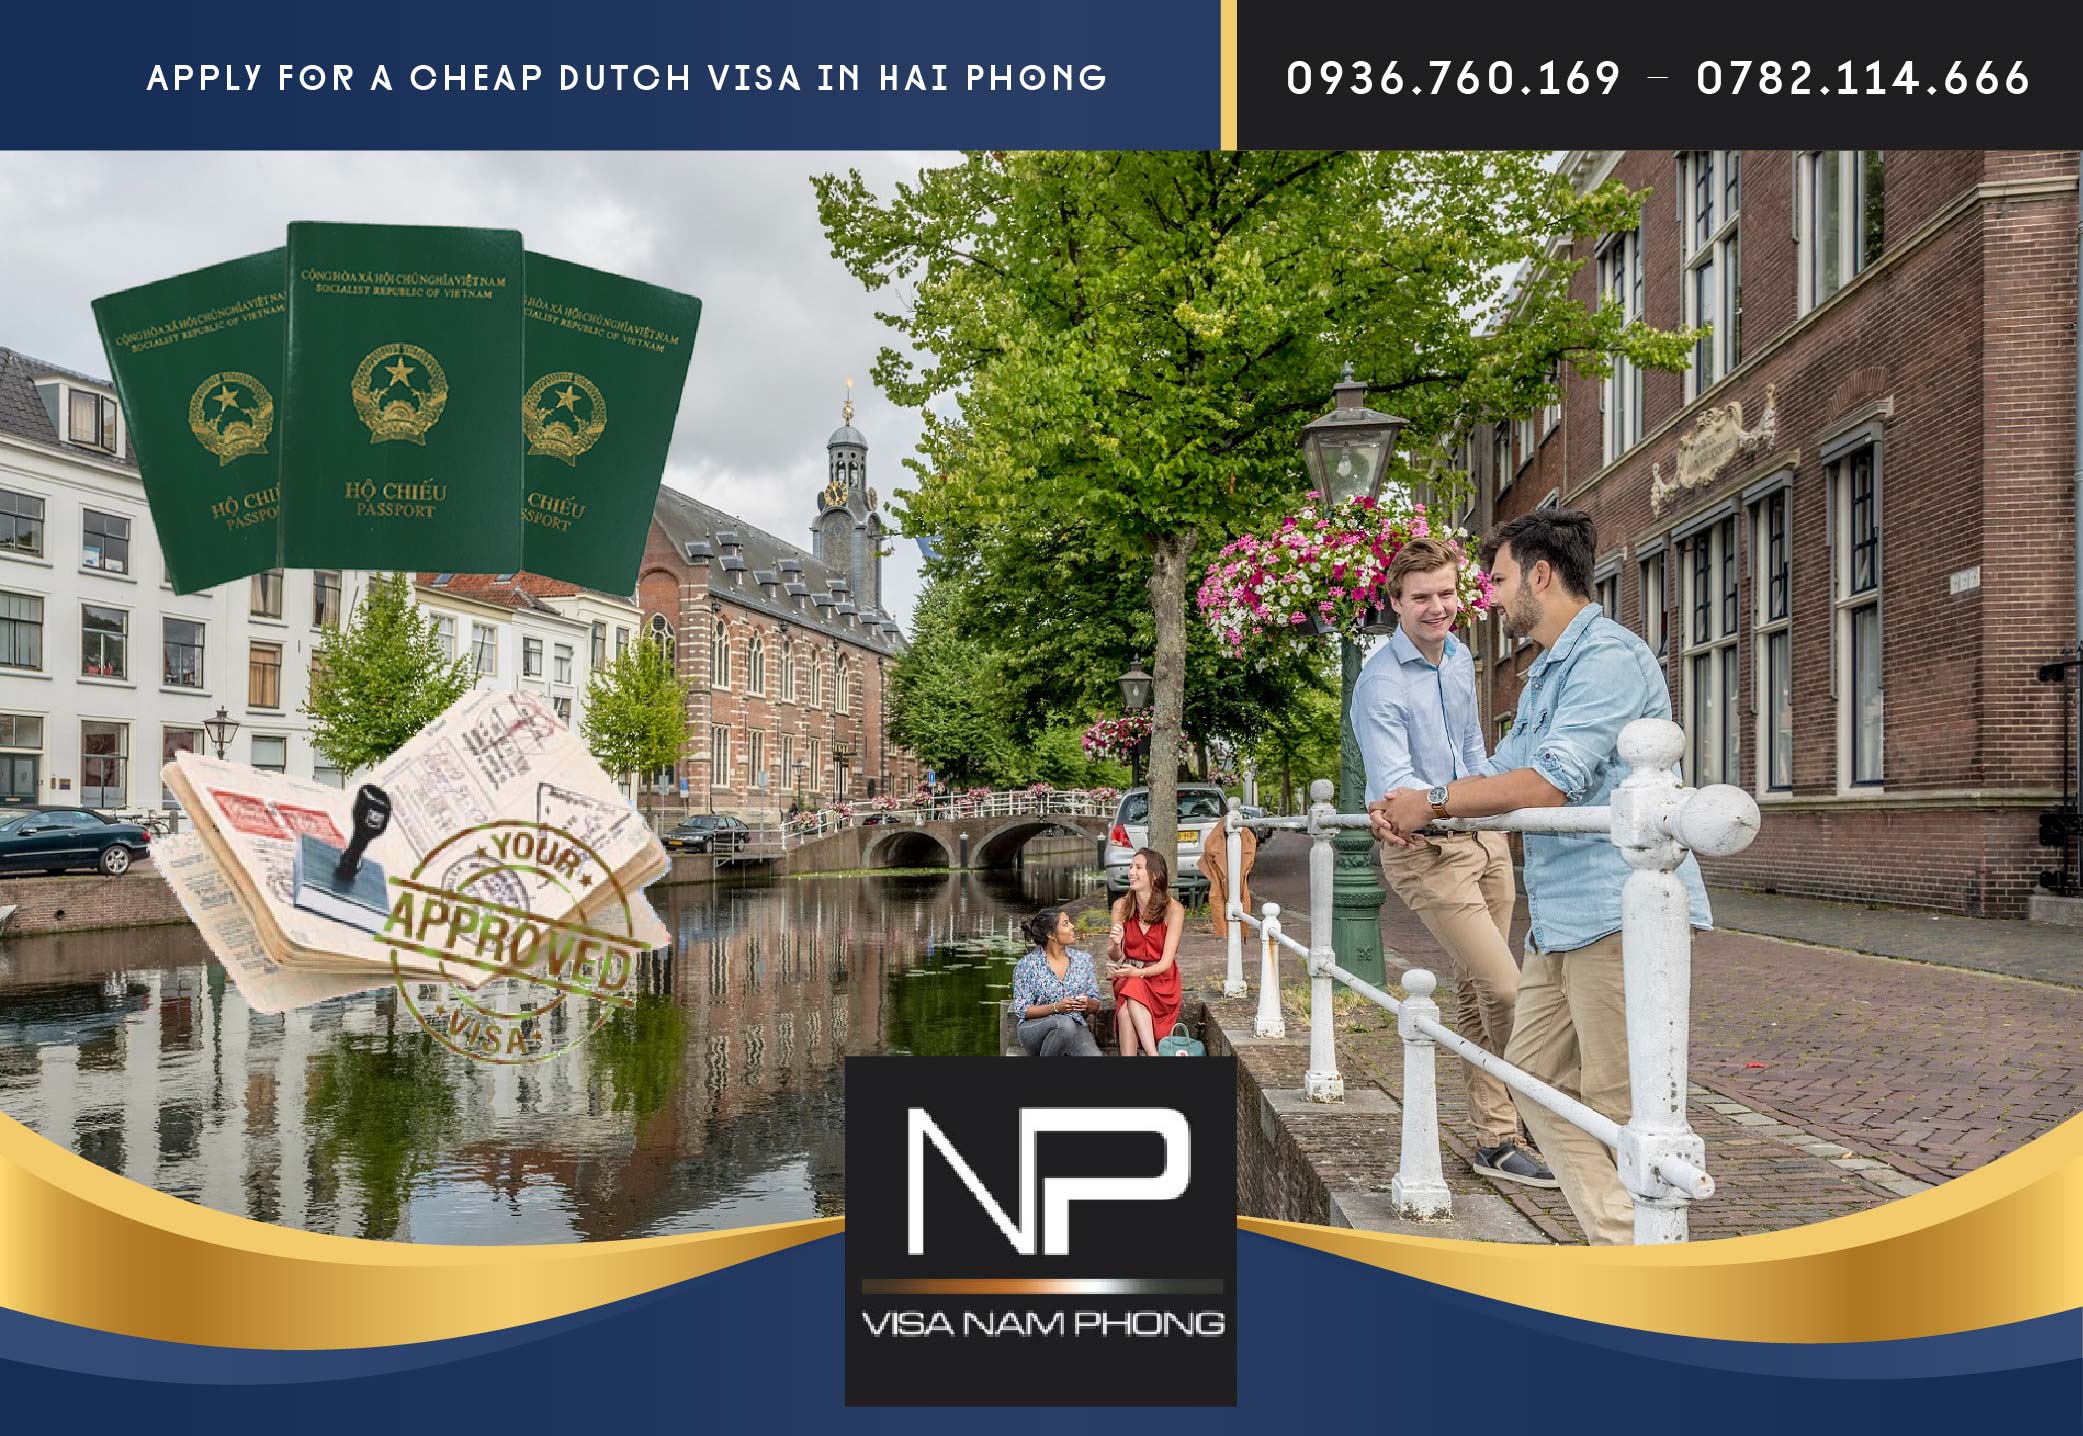 Apply for a cheap Dutch visa in Hai Phong